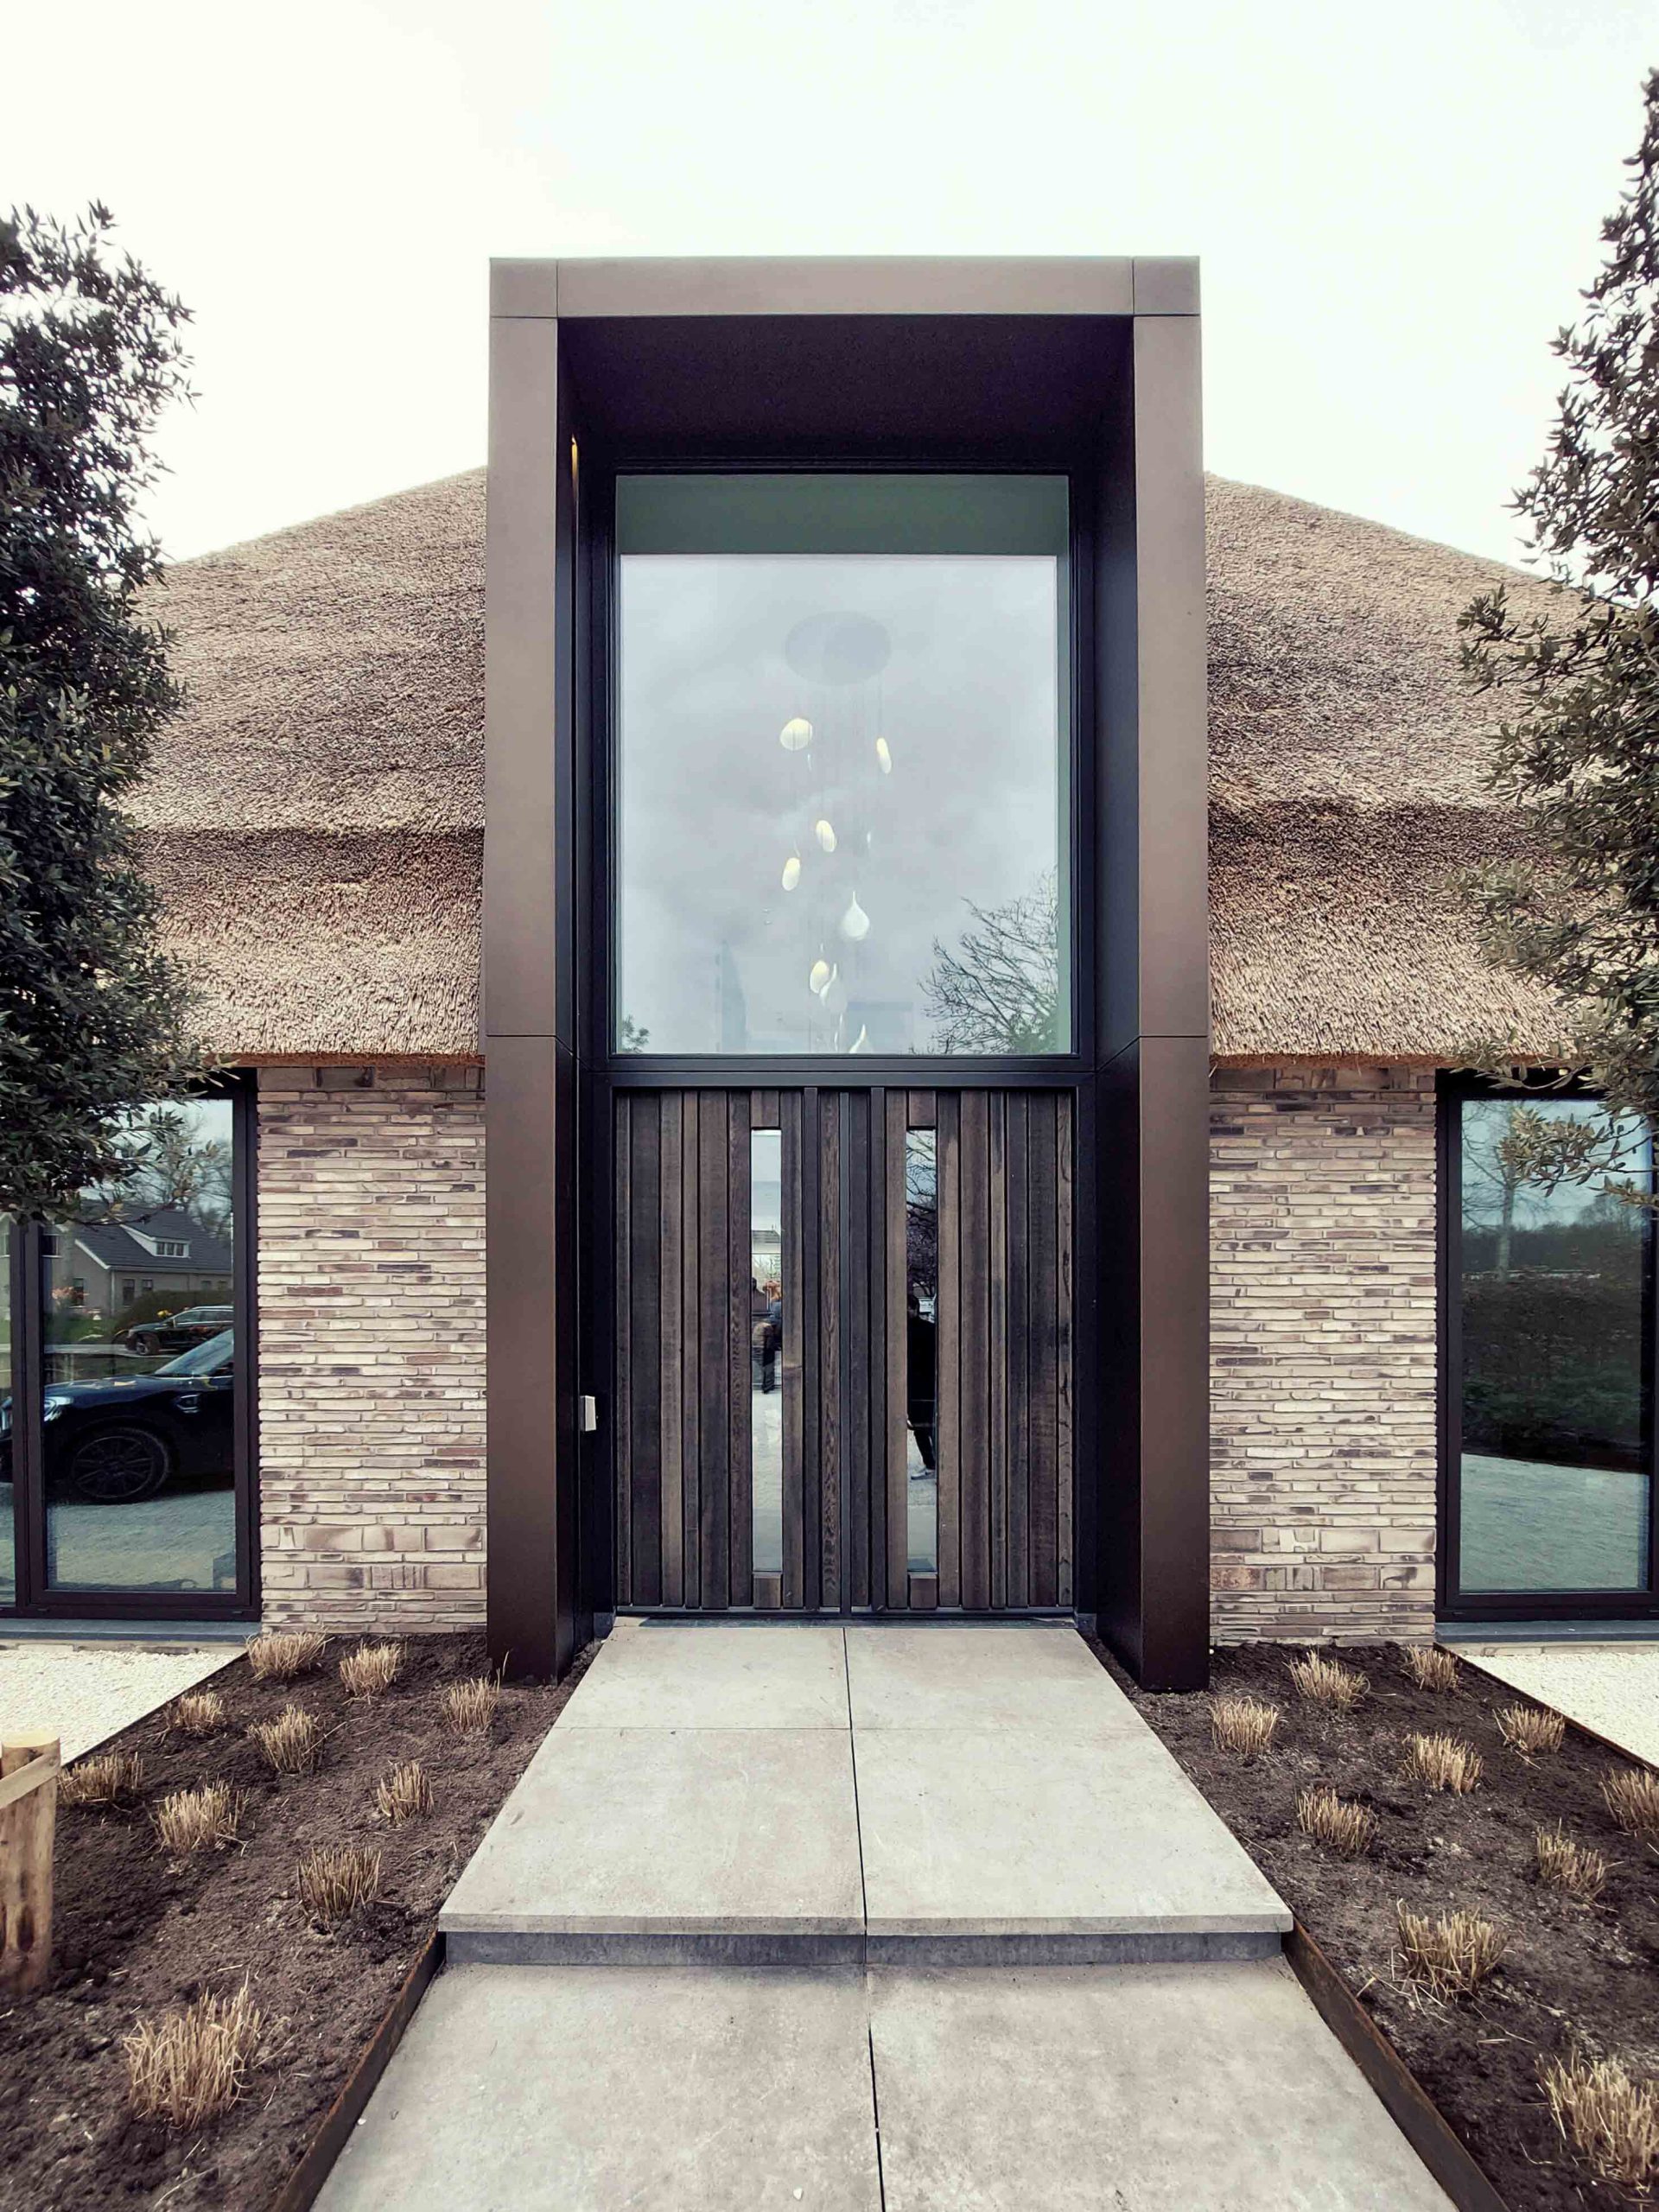 ENZO architectuur N interieur - villa - verbluffend metselwerk - trap - entree - Oplevering riante stolpboerderij